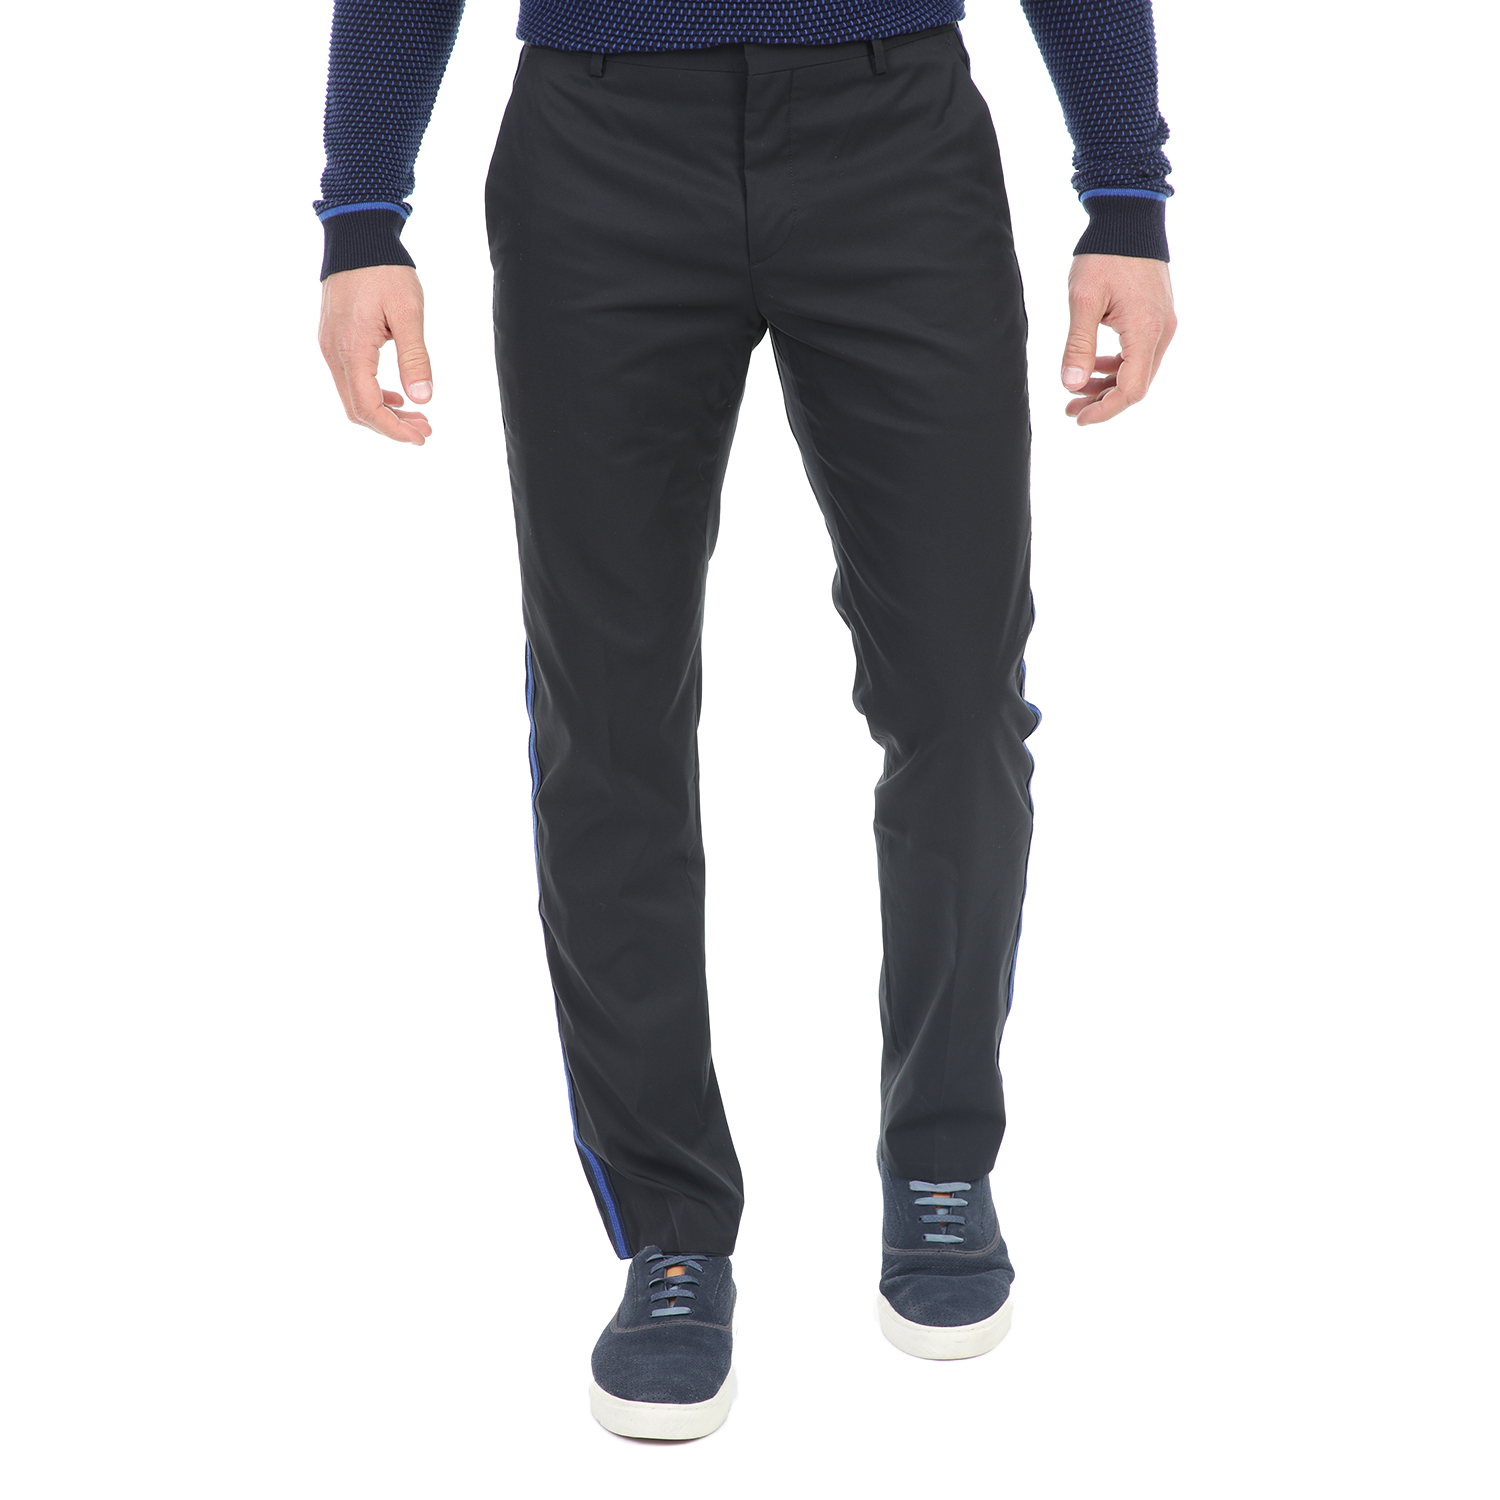 Ανδρικά/Ρούχα/Παντελόνια/Ισια Γραμμή CK - Ανδρικό παντελόνι CK PARET FINE TECHNO TWILL μαύρο